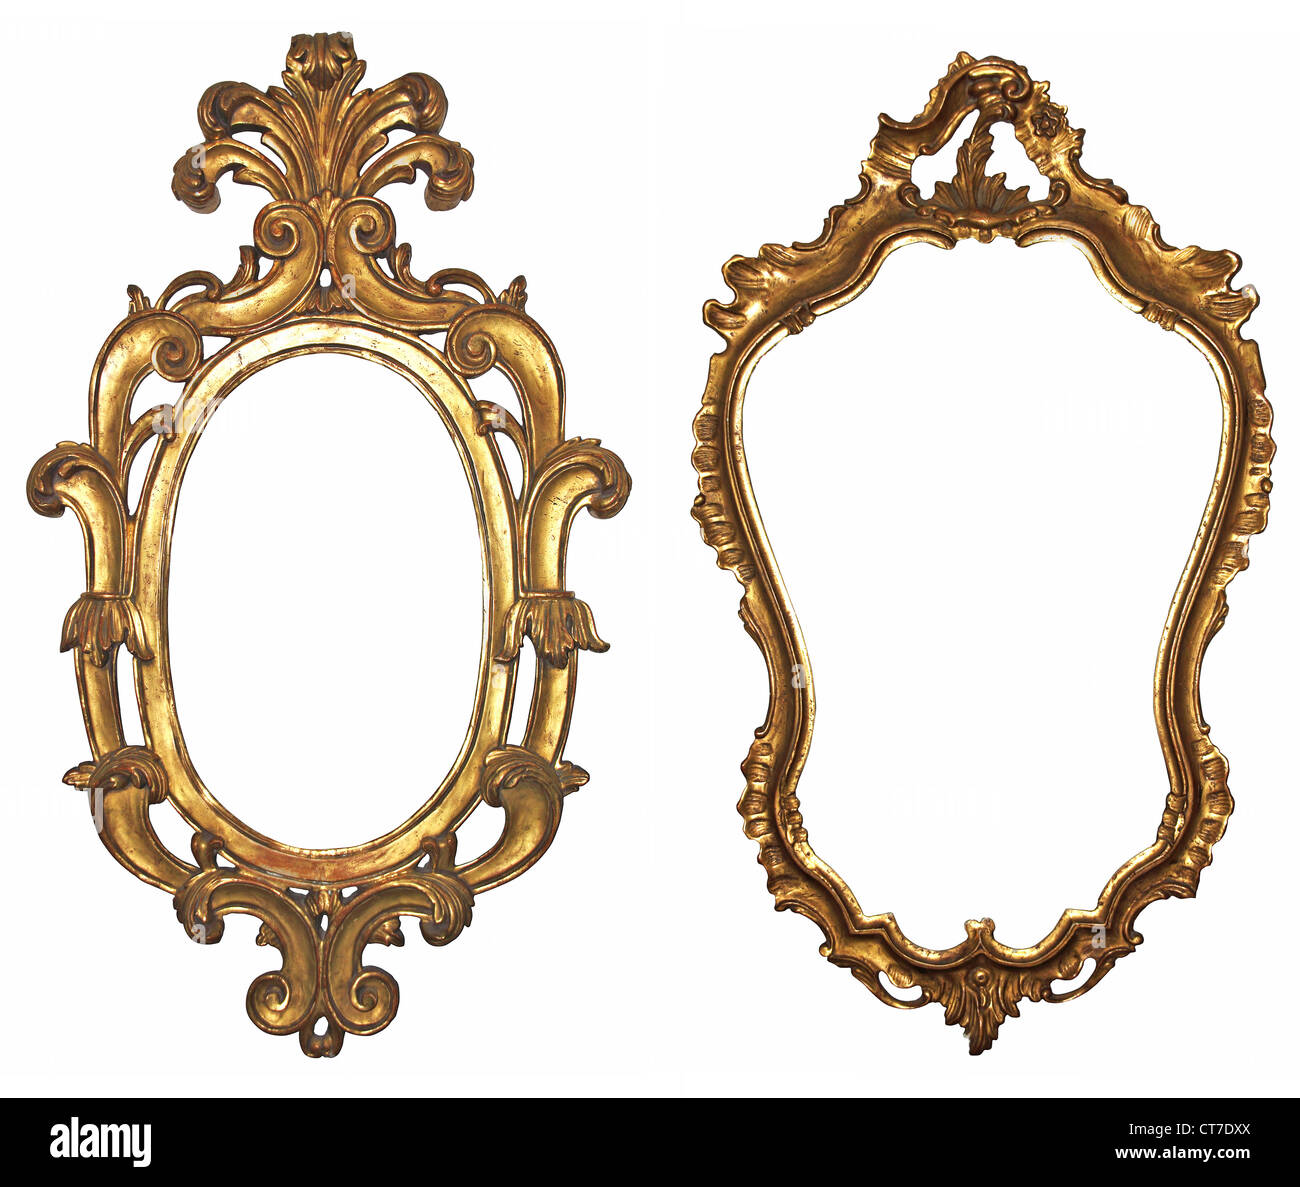 Vieux cadres en bois doré pour les miroirs Banque D'Images